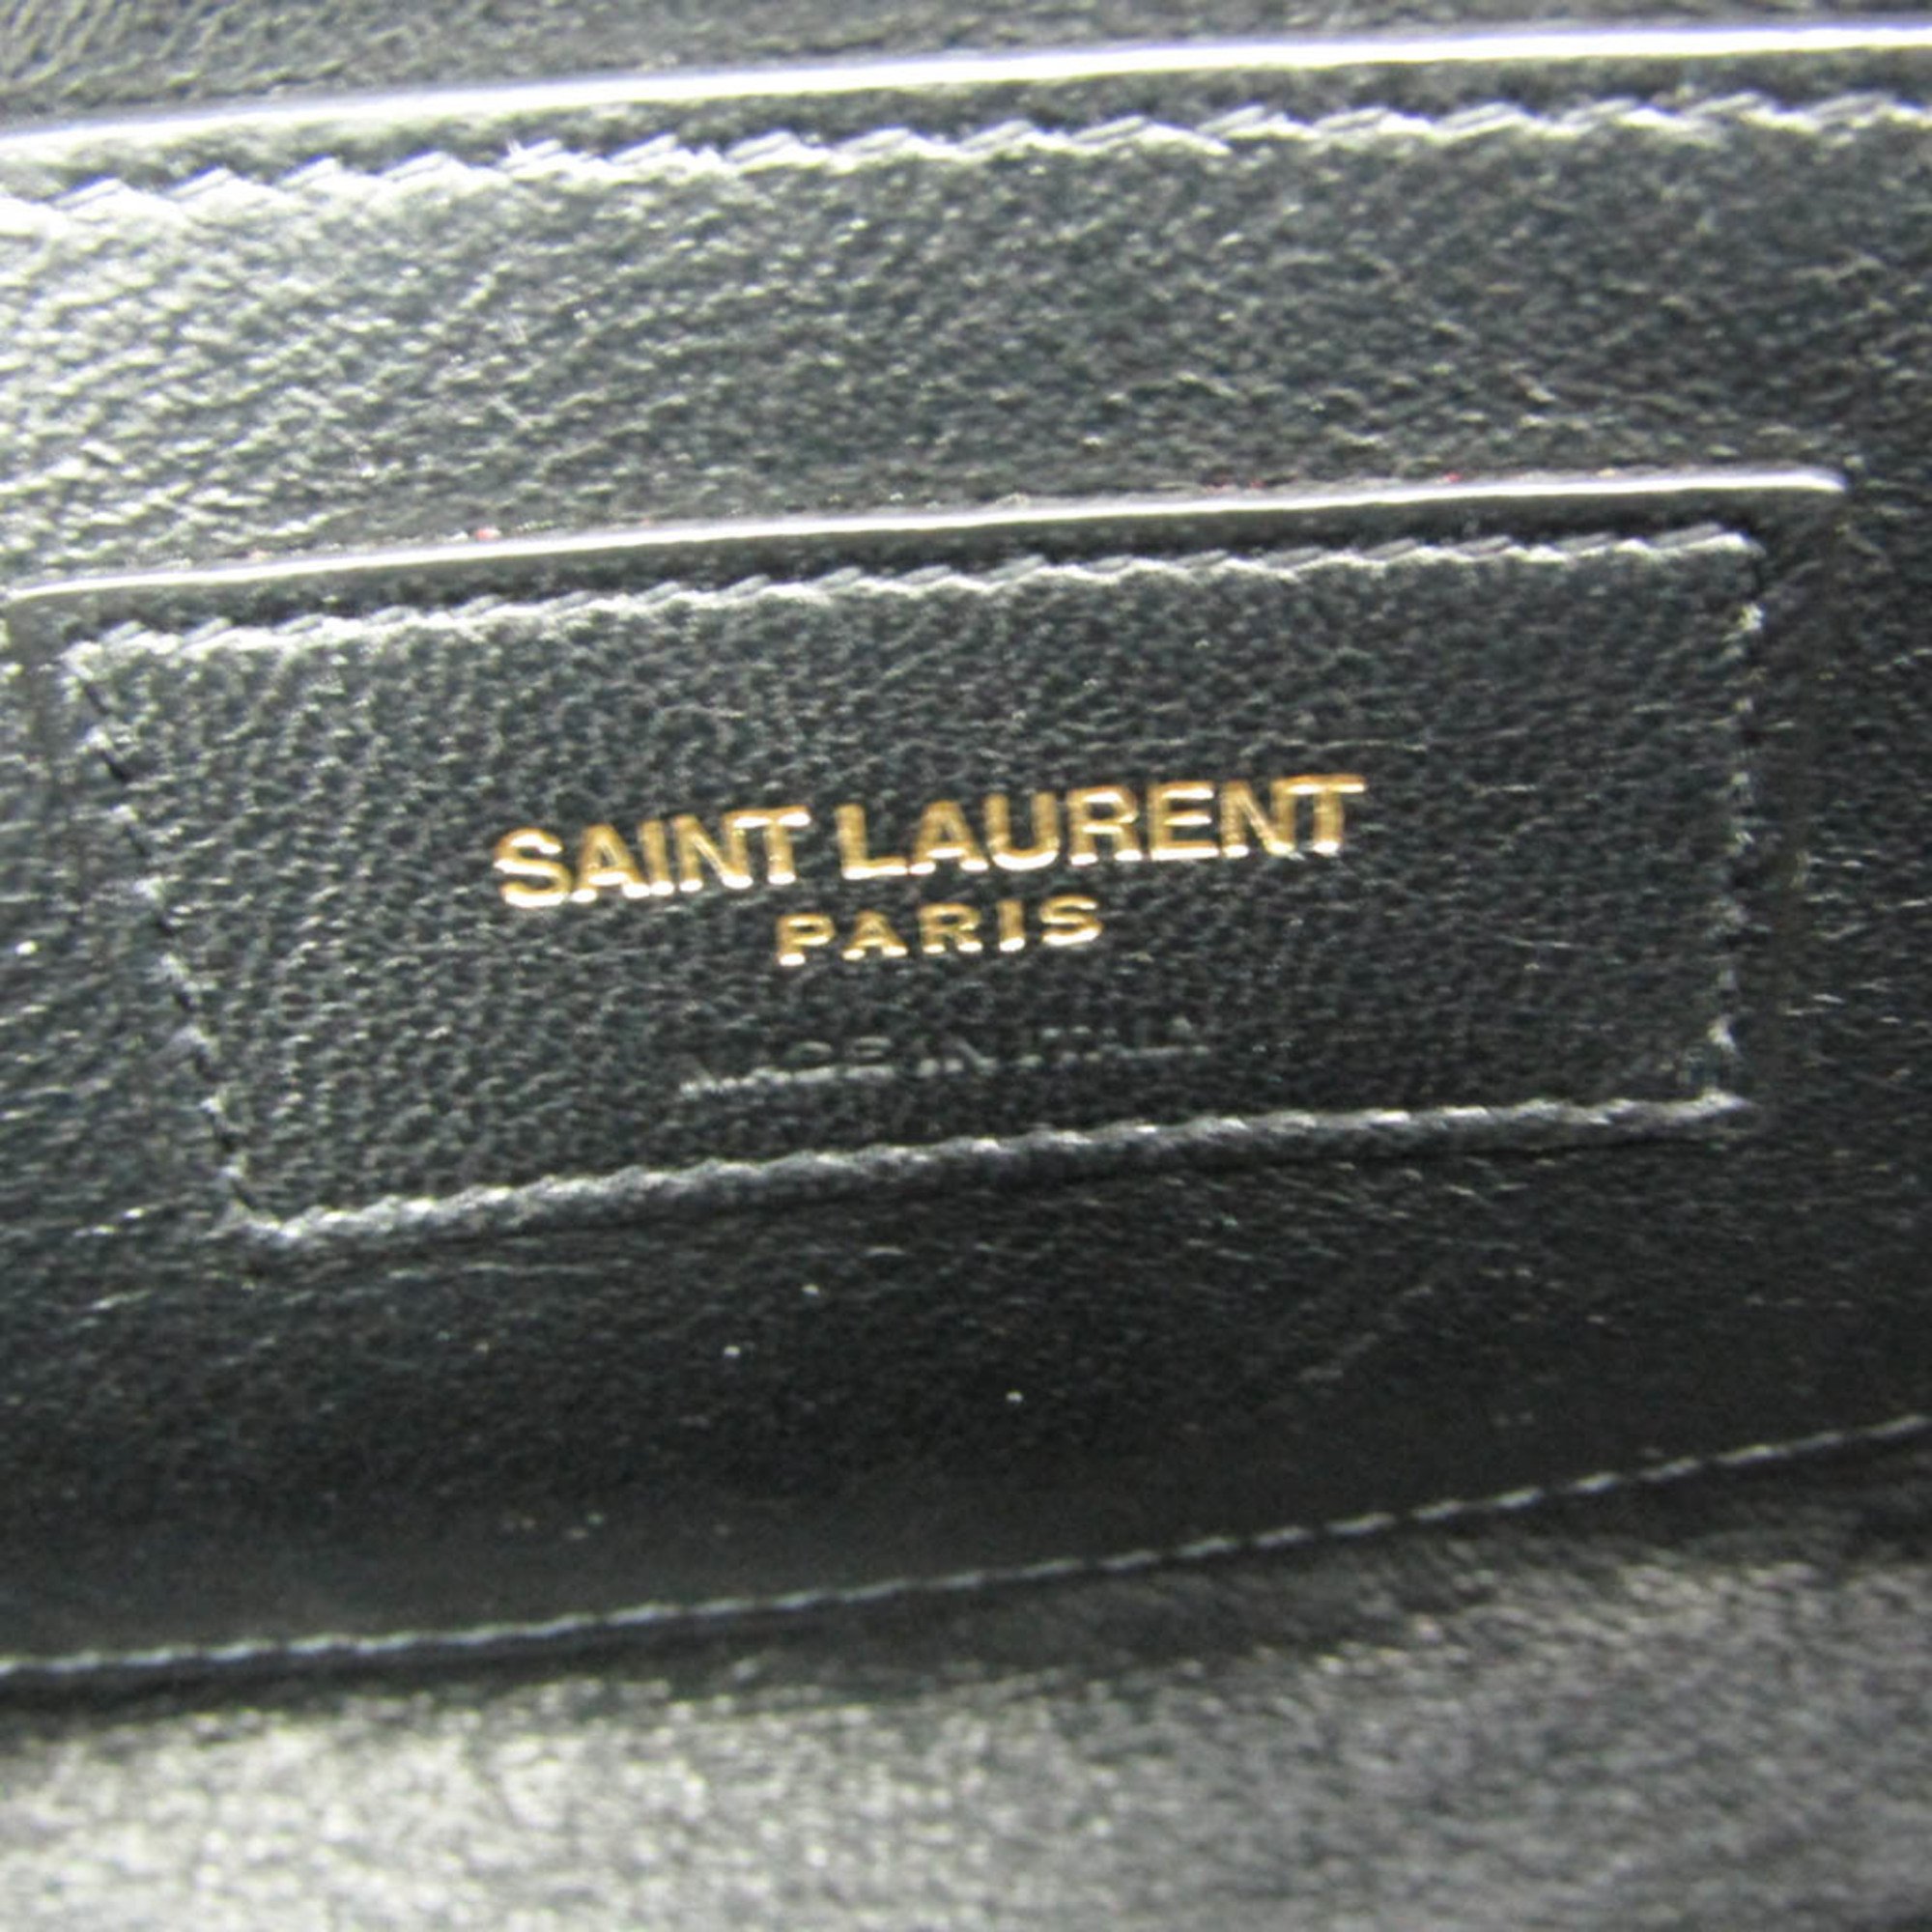 Saint Laurent Camera Bag 582673 Women's Leather Shoulder Bag Red Color